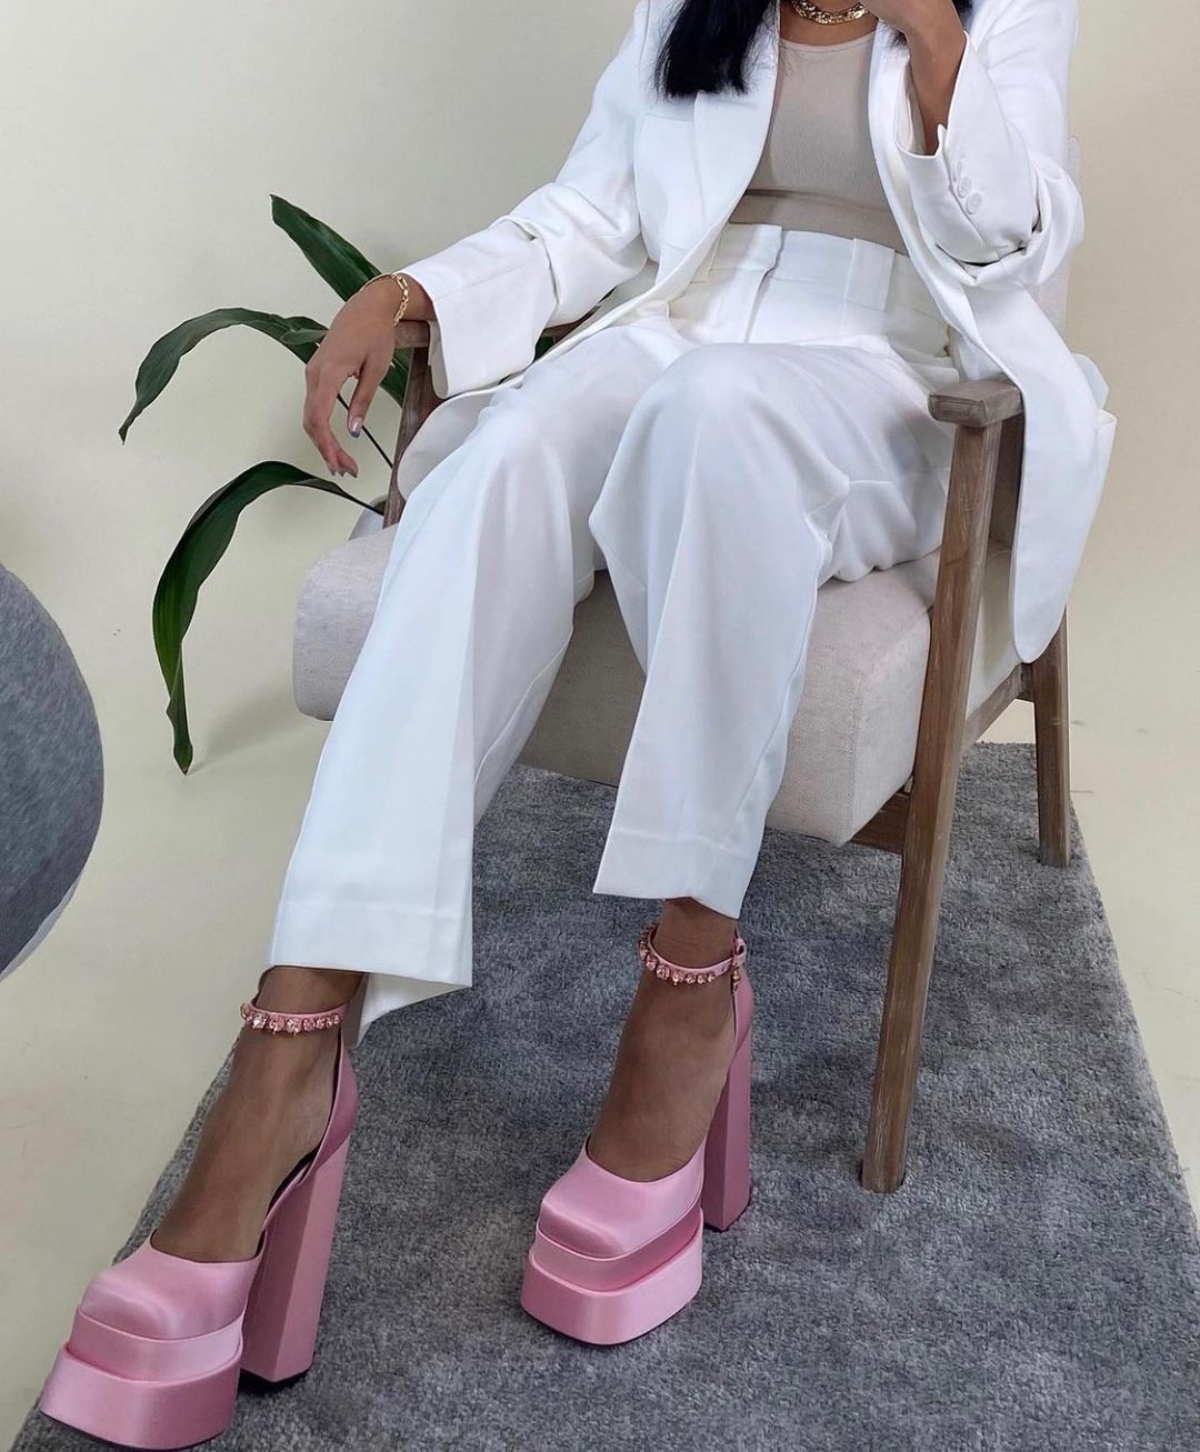 scarpe rosa plateau abbinati completo bianco elegante